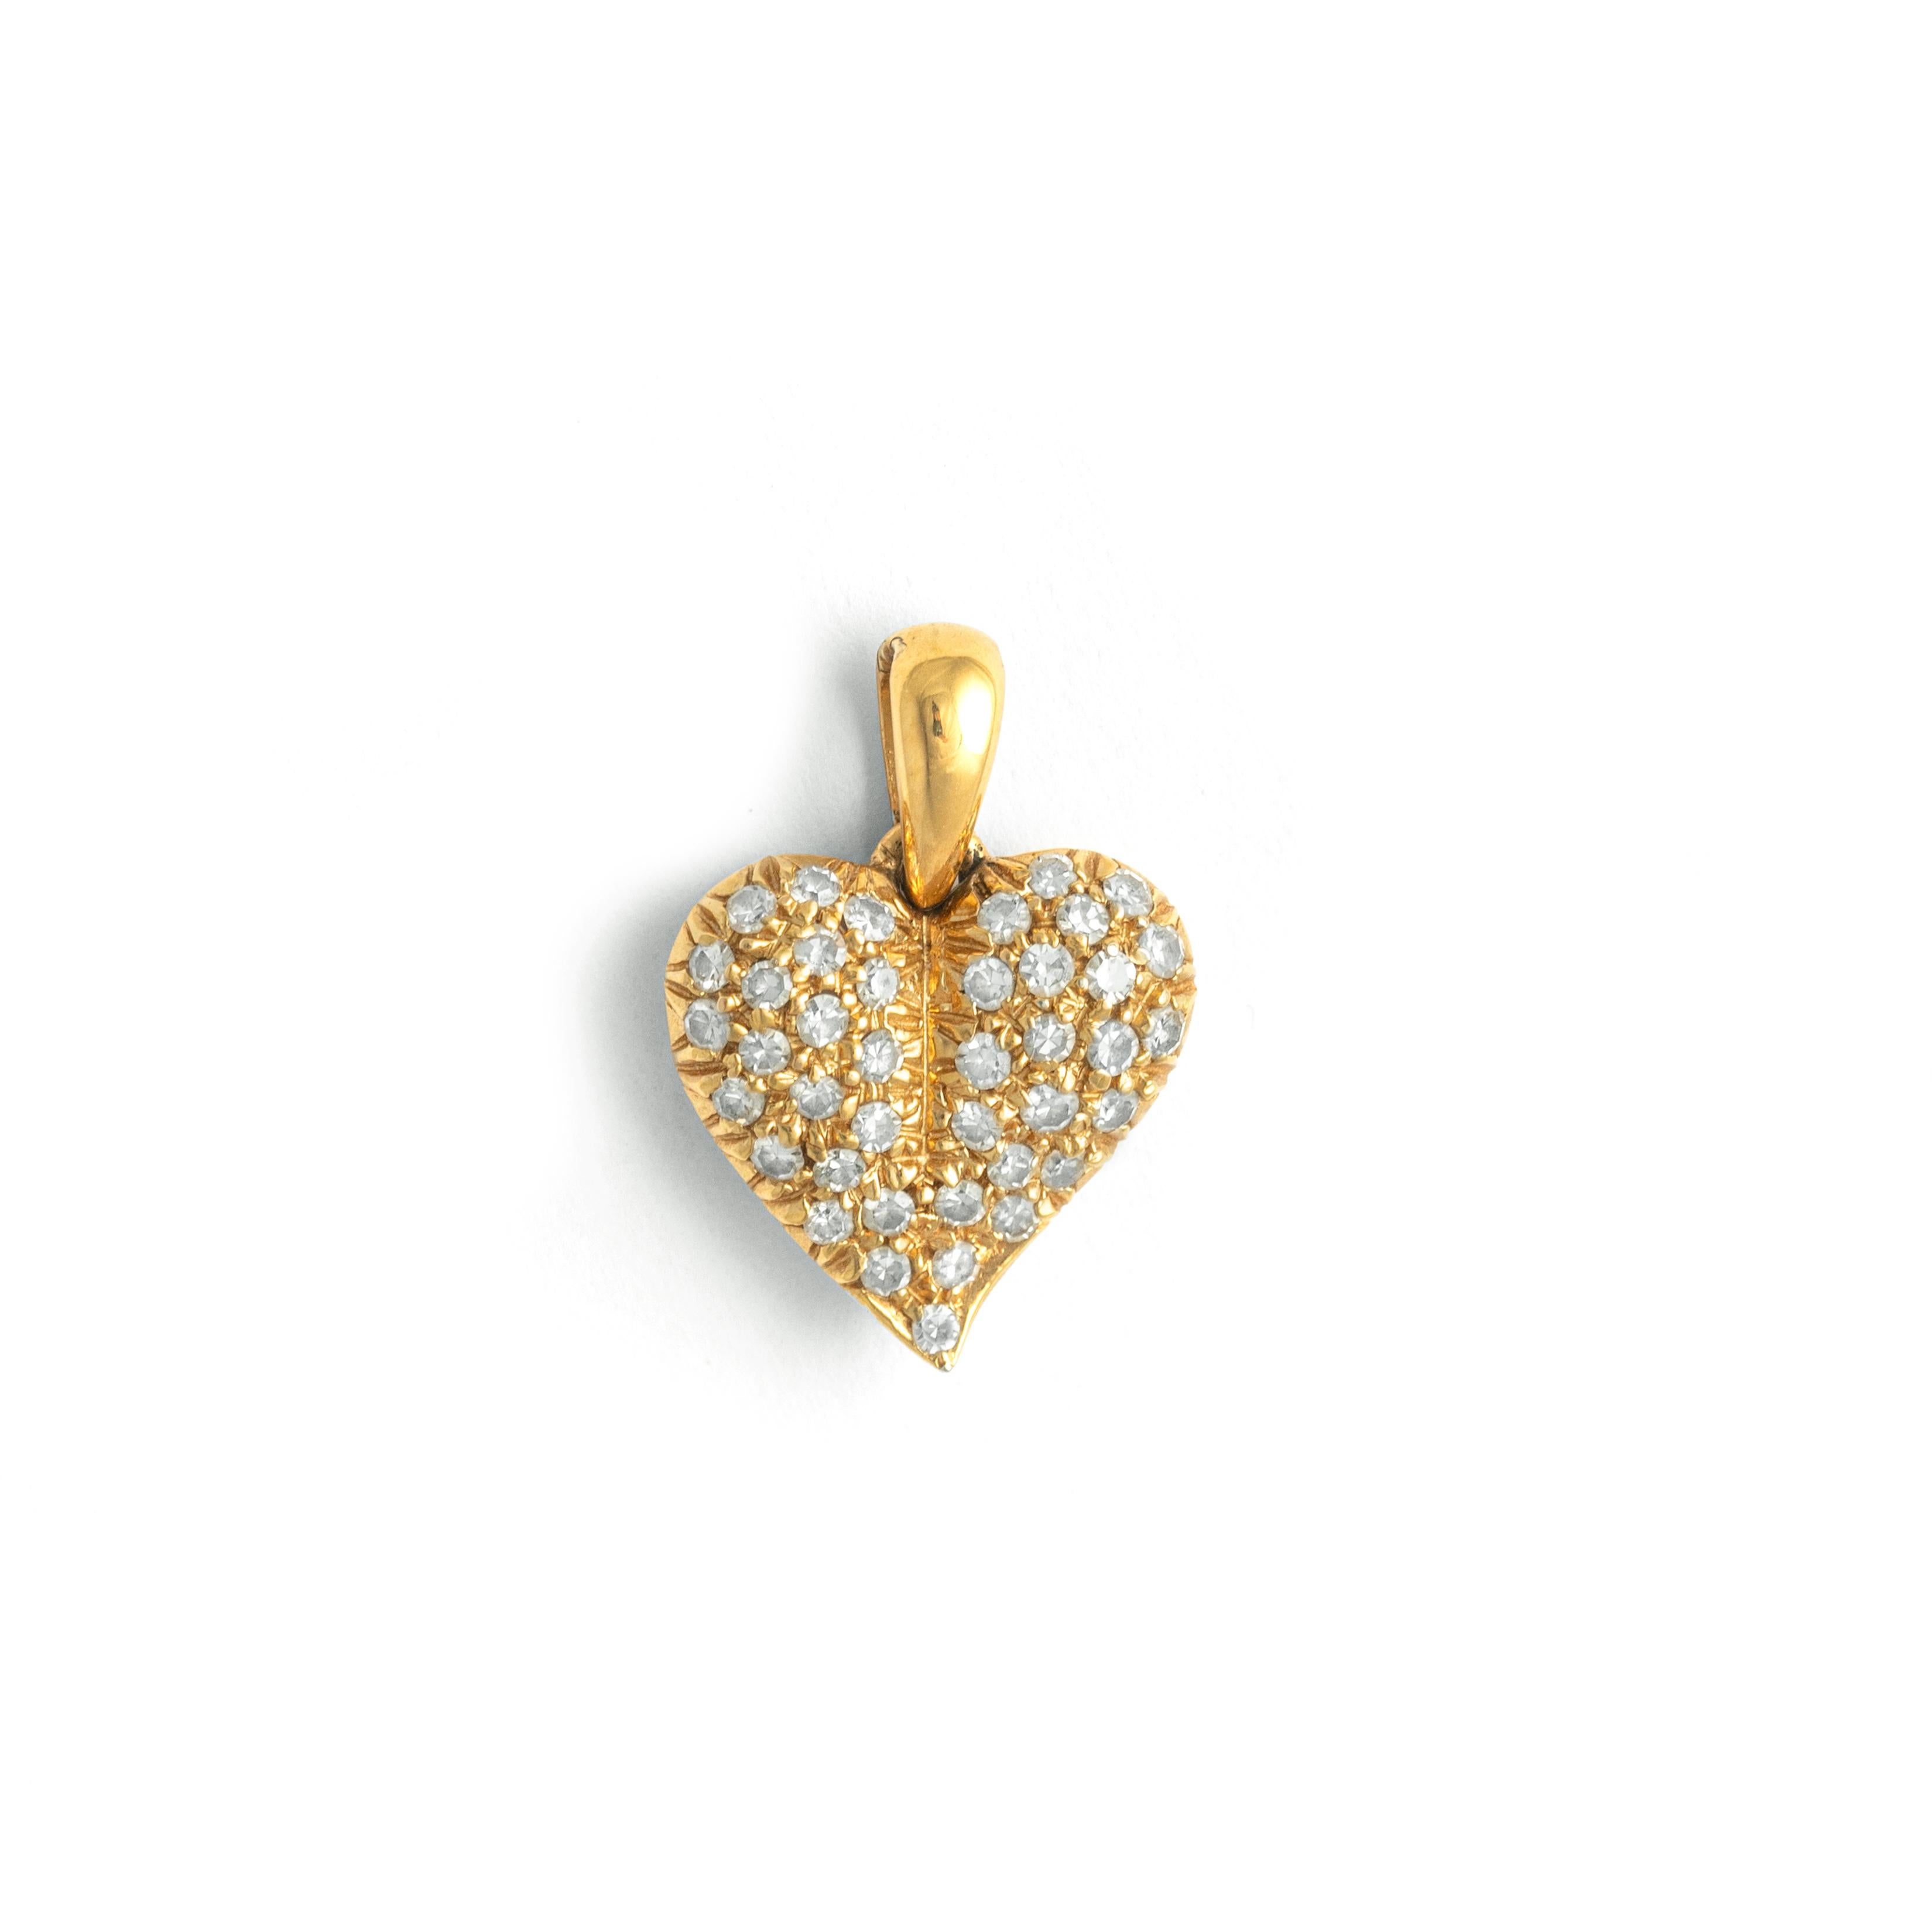 Pendentif en or jaune 18K à motif de cœur de diamant.
Hauteur : 1.60 centimètres.
Largeur : 1.10 centimètres.
Profondeur : 0.40 centimètres.

Poids : 1.96 grammes.
